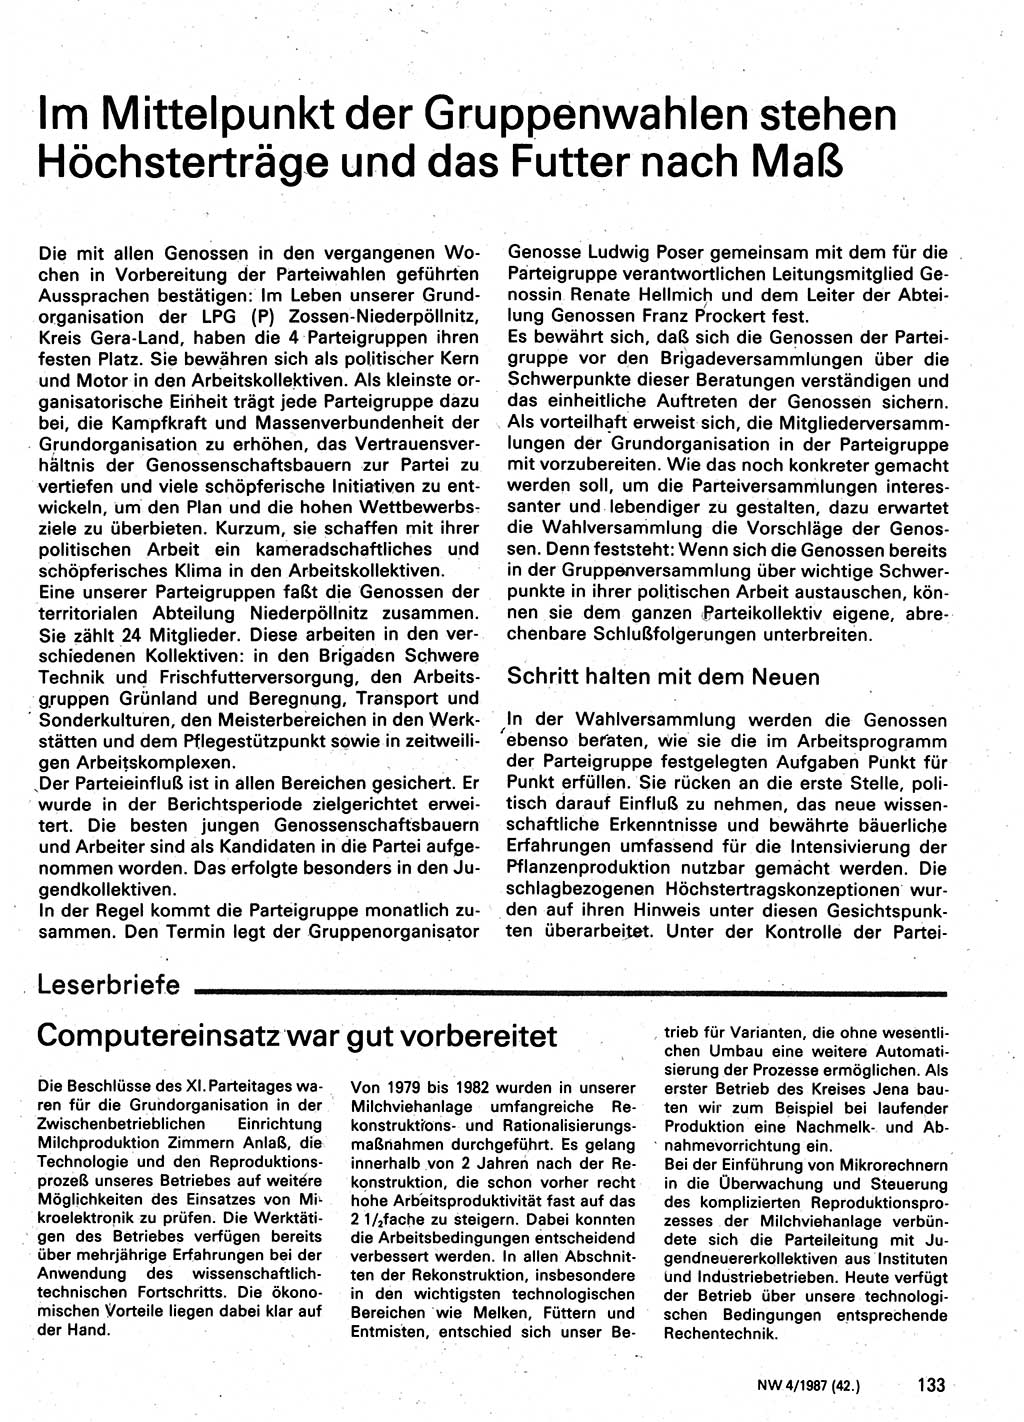 Neuer Weg (NW), Organ des Zentralkomitees (ZK) der SED (Sozialistische Einheitspartei Deutschlands) für Fragen des Parteilebens, 42. Jahrgang [Deutsche Demokratische Republik (DDR)] 1987, Seite 133 (NW ZK SED DDR 1987, S. 133)